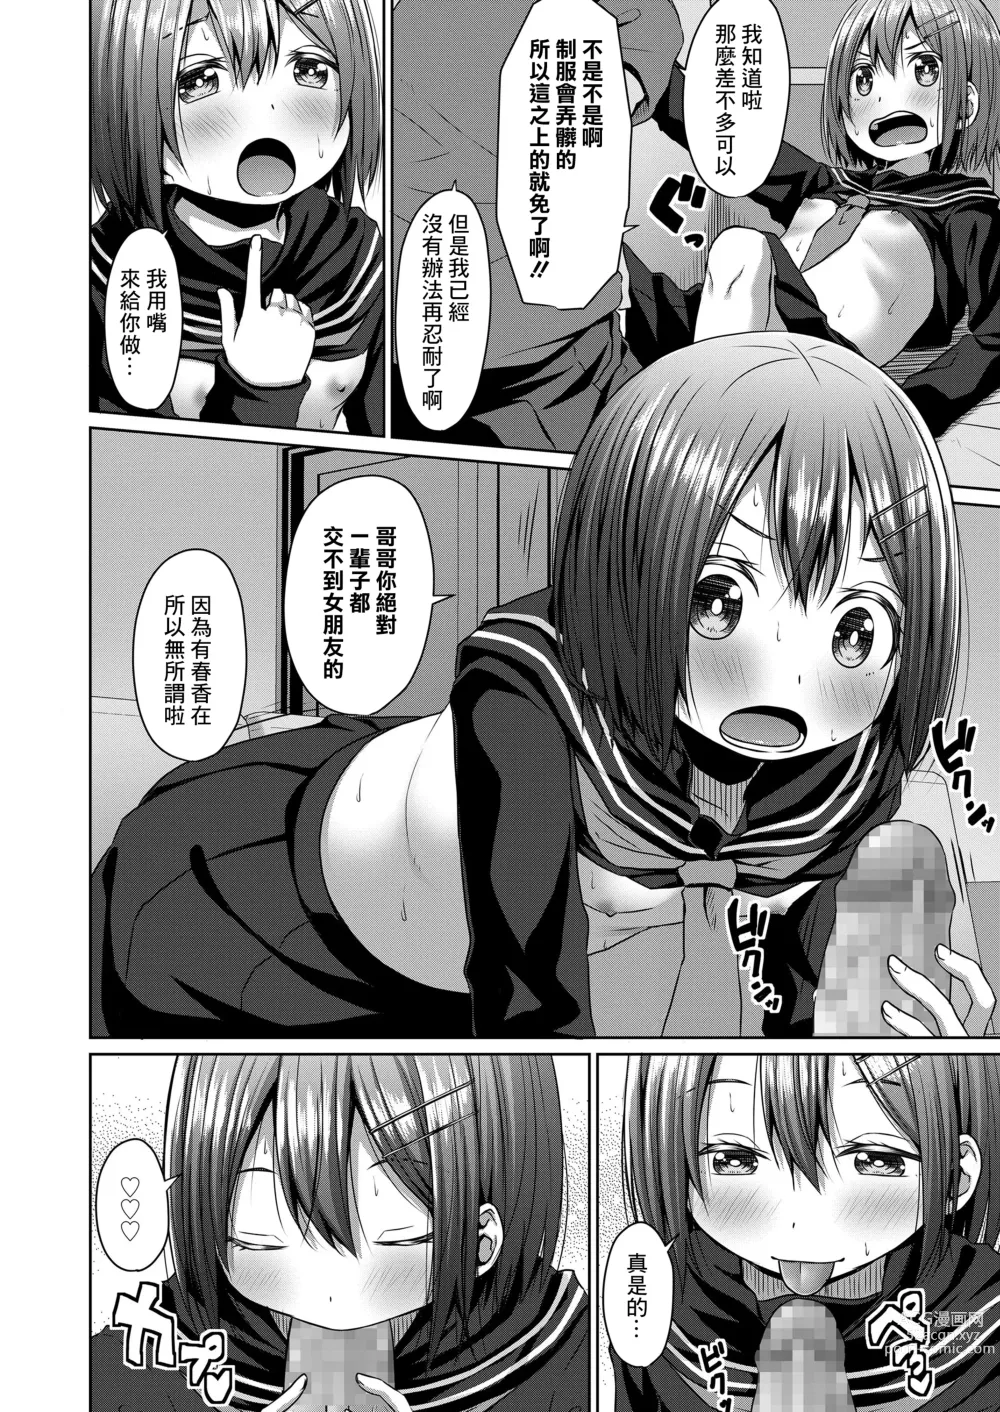 Page 8 of manga Seifuku